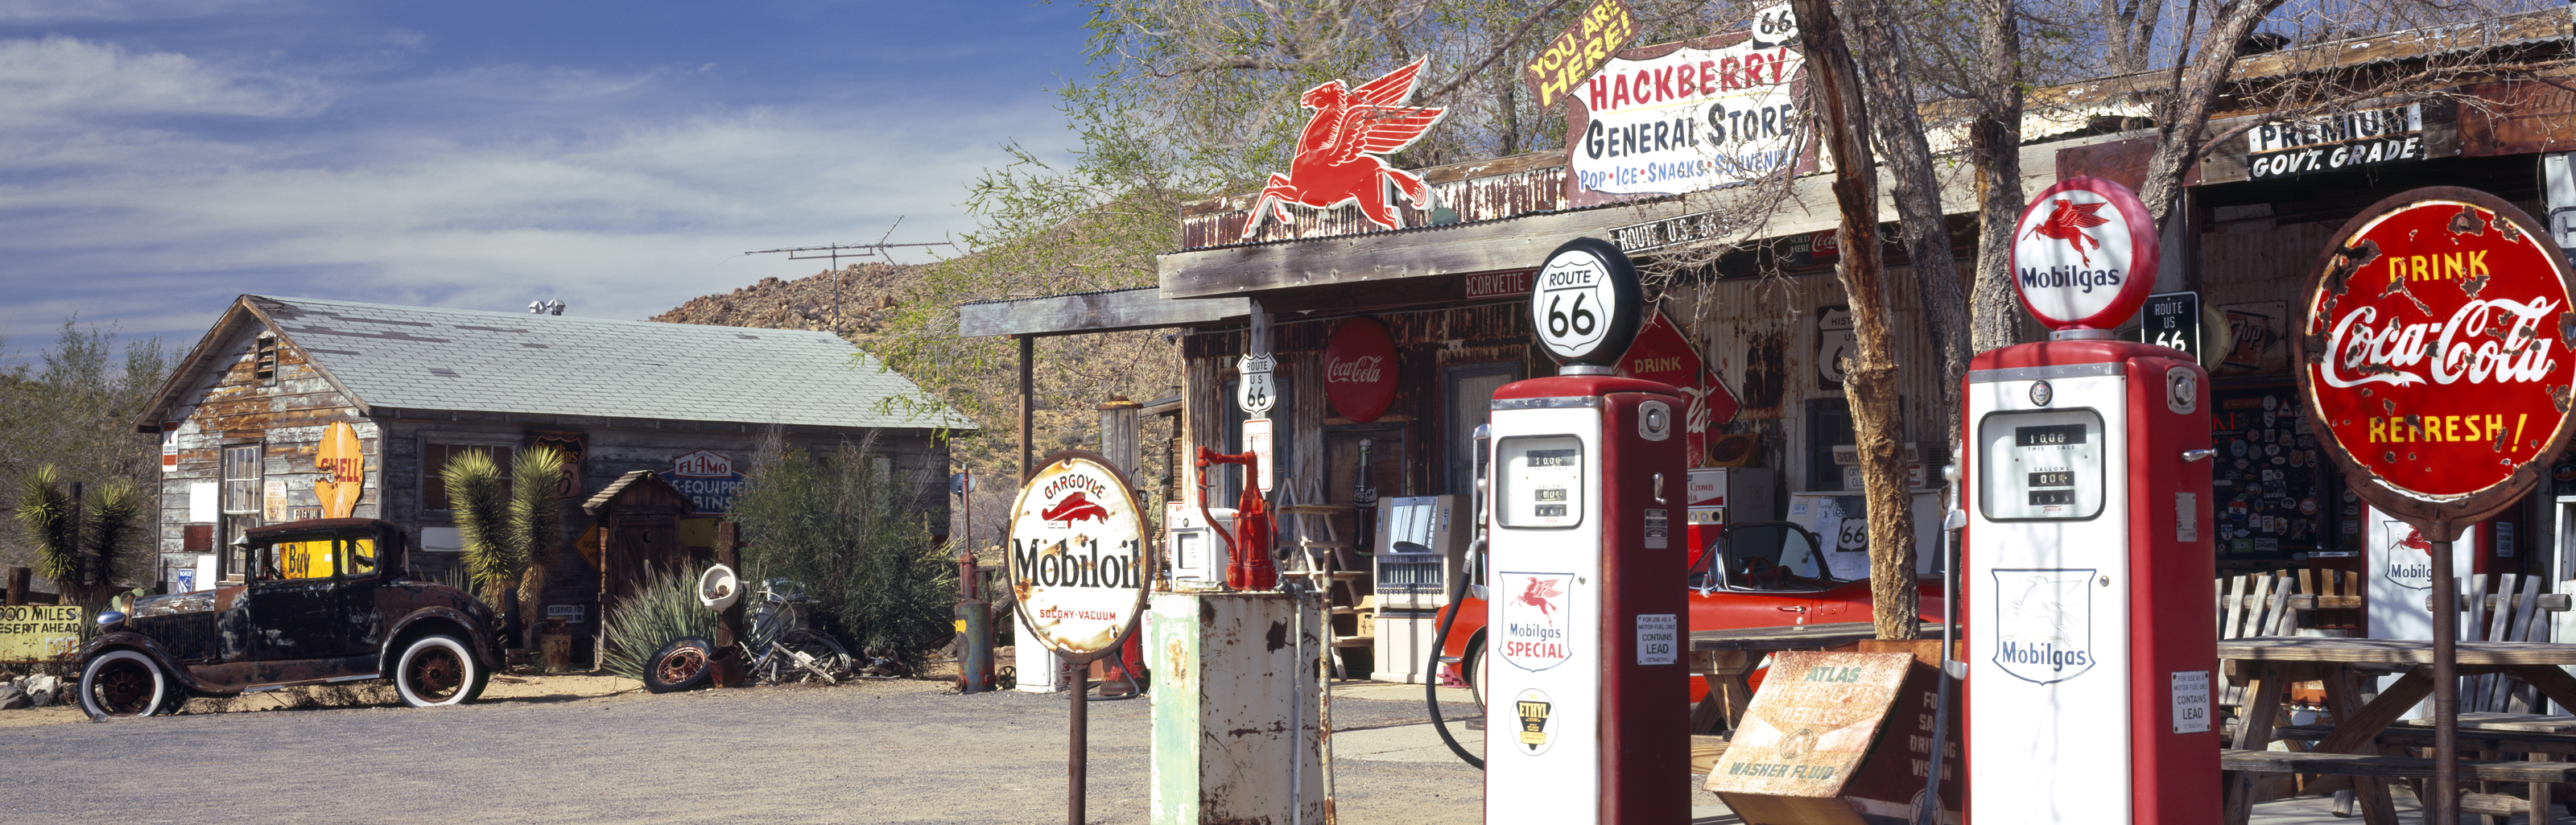 Vintage Gas Station by Steve Snyder